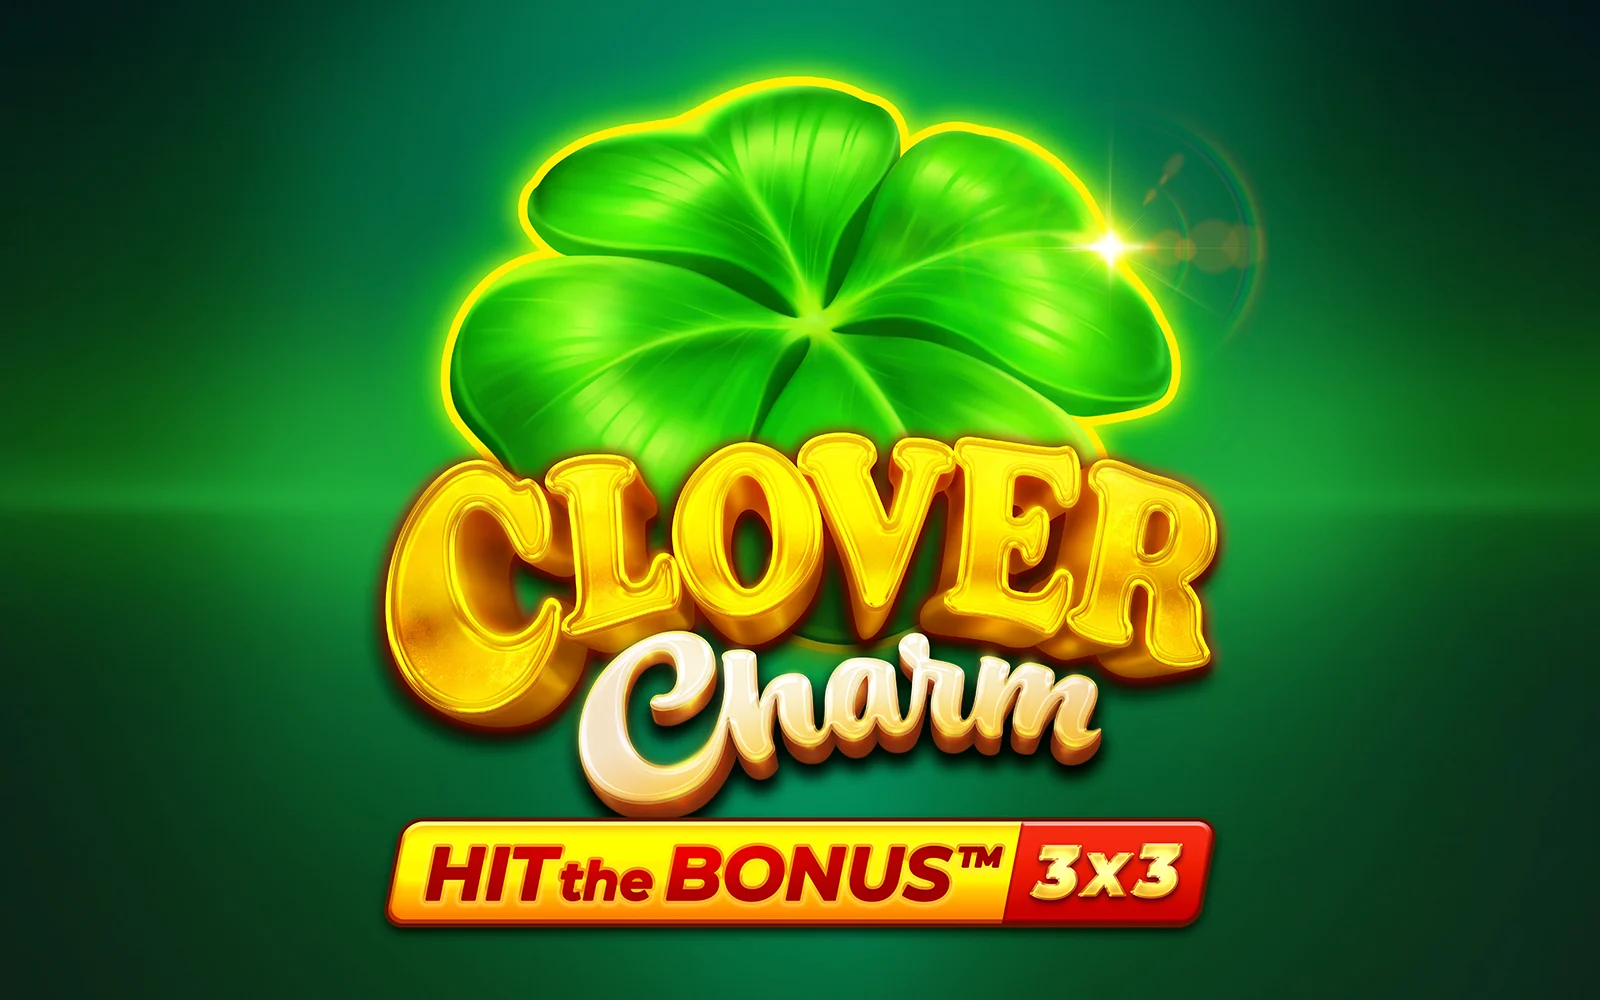 Spielen Sie Clover Charm: Hit the Bonus ™ auf Starcasino.be-Online-Casino